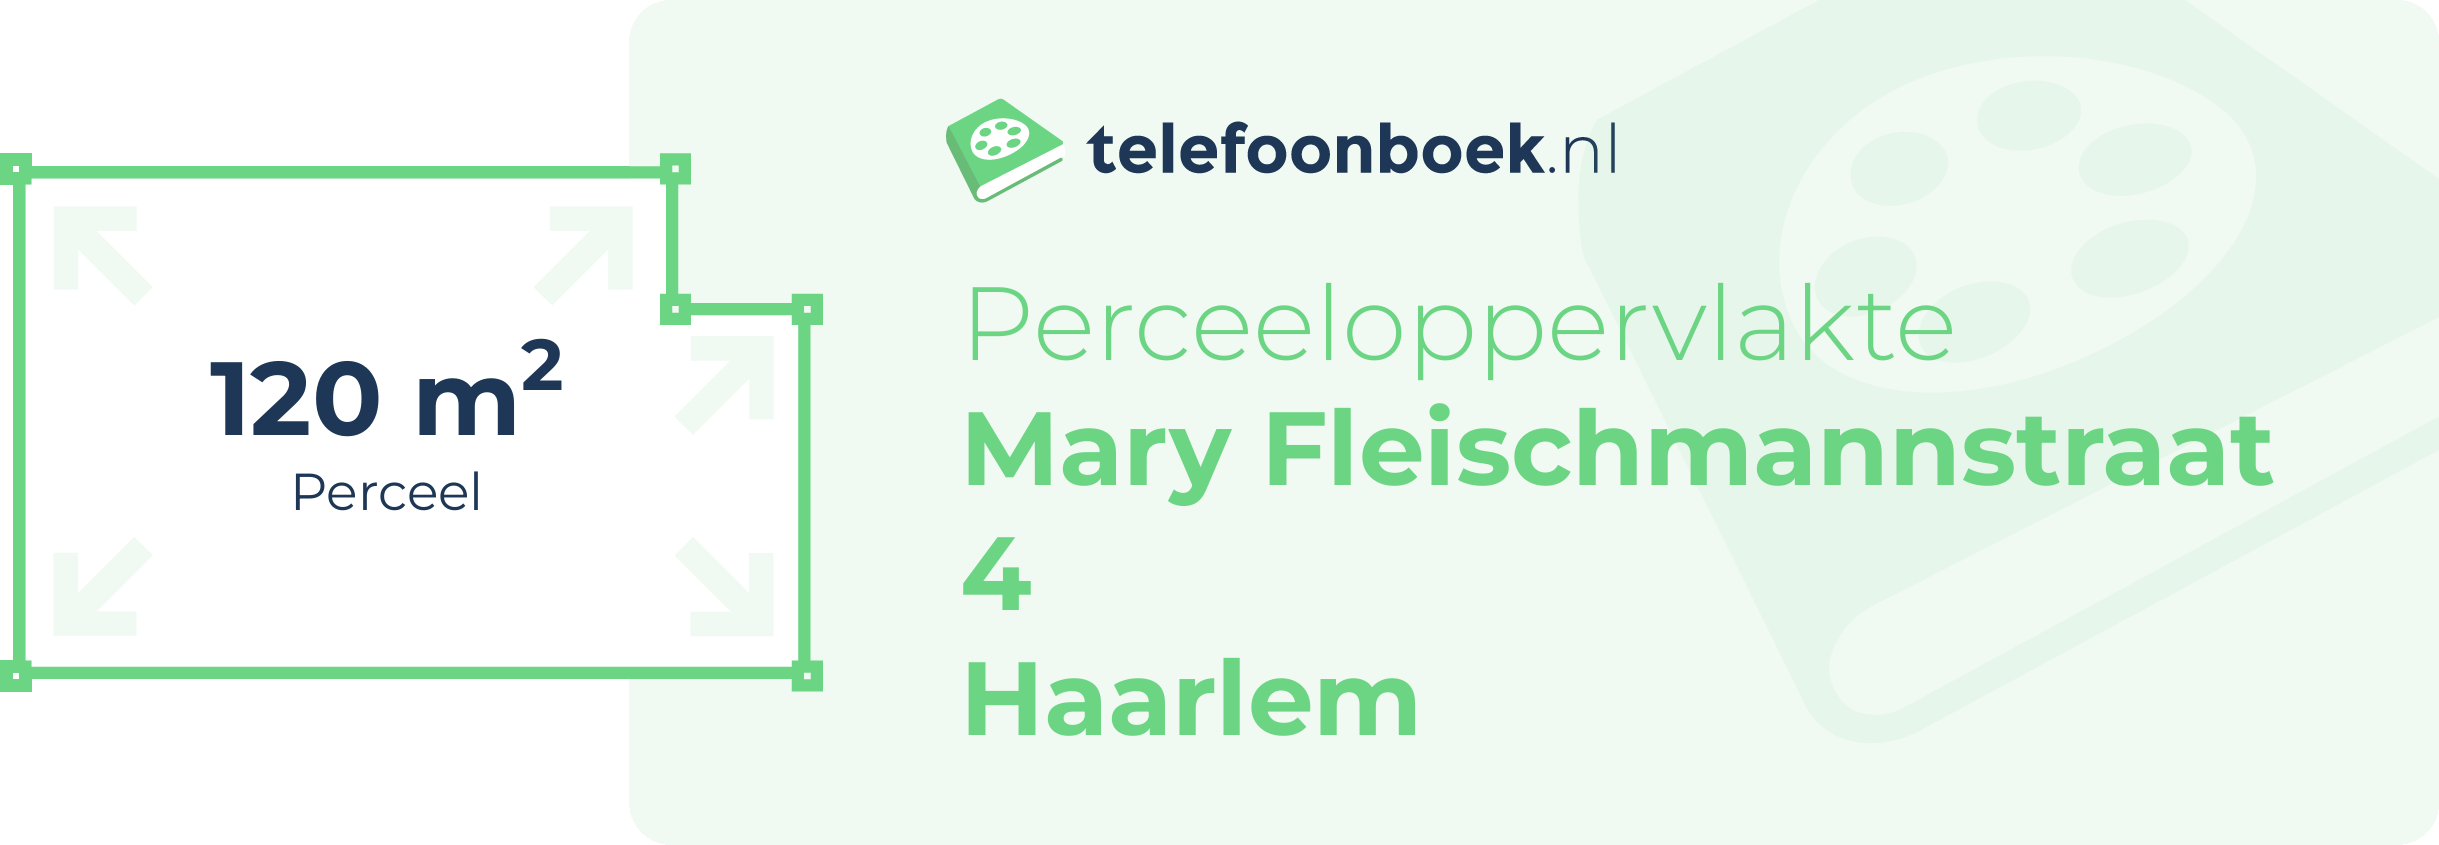 Perceeloppervlakte Mary Fleischmannstraat 4 Haarlem